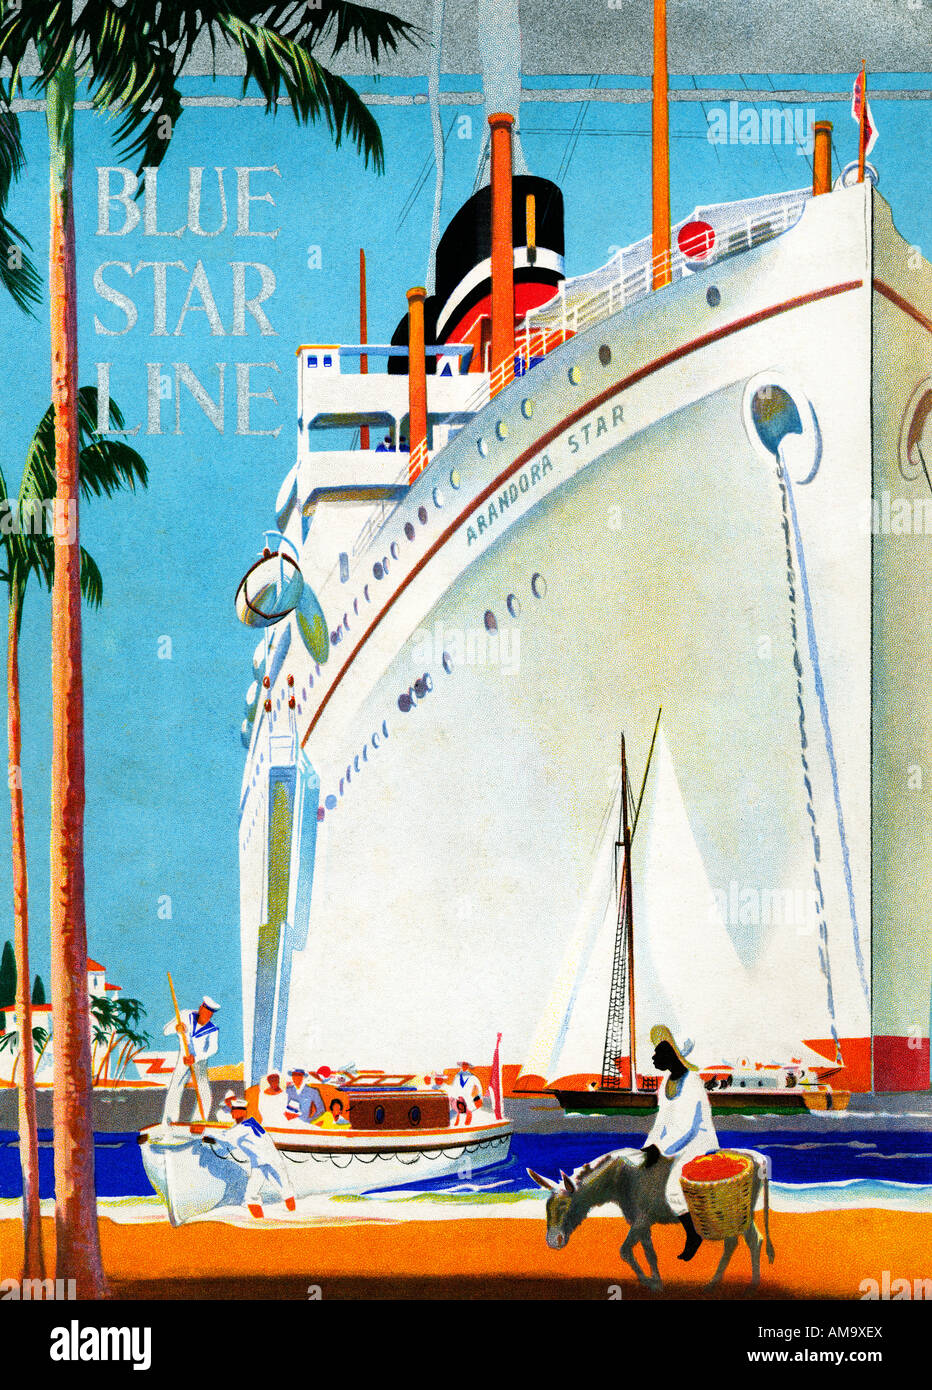 Blue Star Line Arandora Star 1929 affiche pour le Cruise line montrant l'infortuné navire en climats tropicaux Banque D'Images